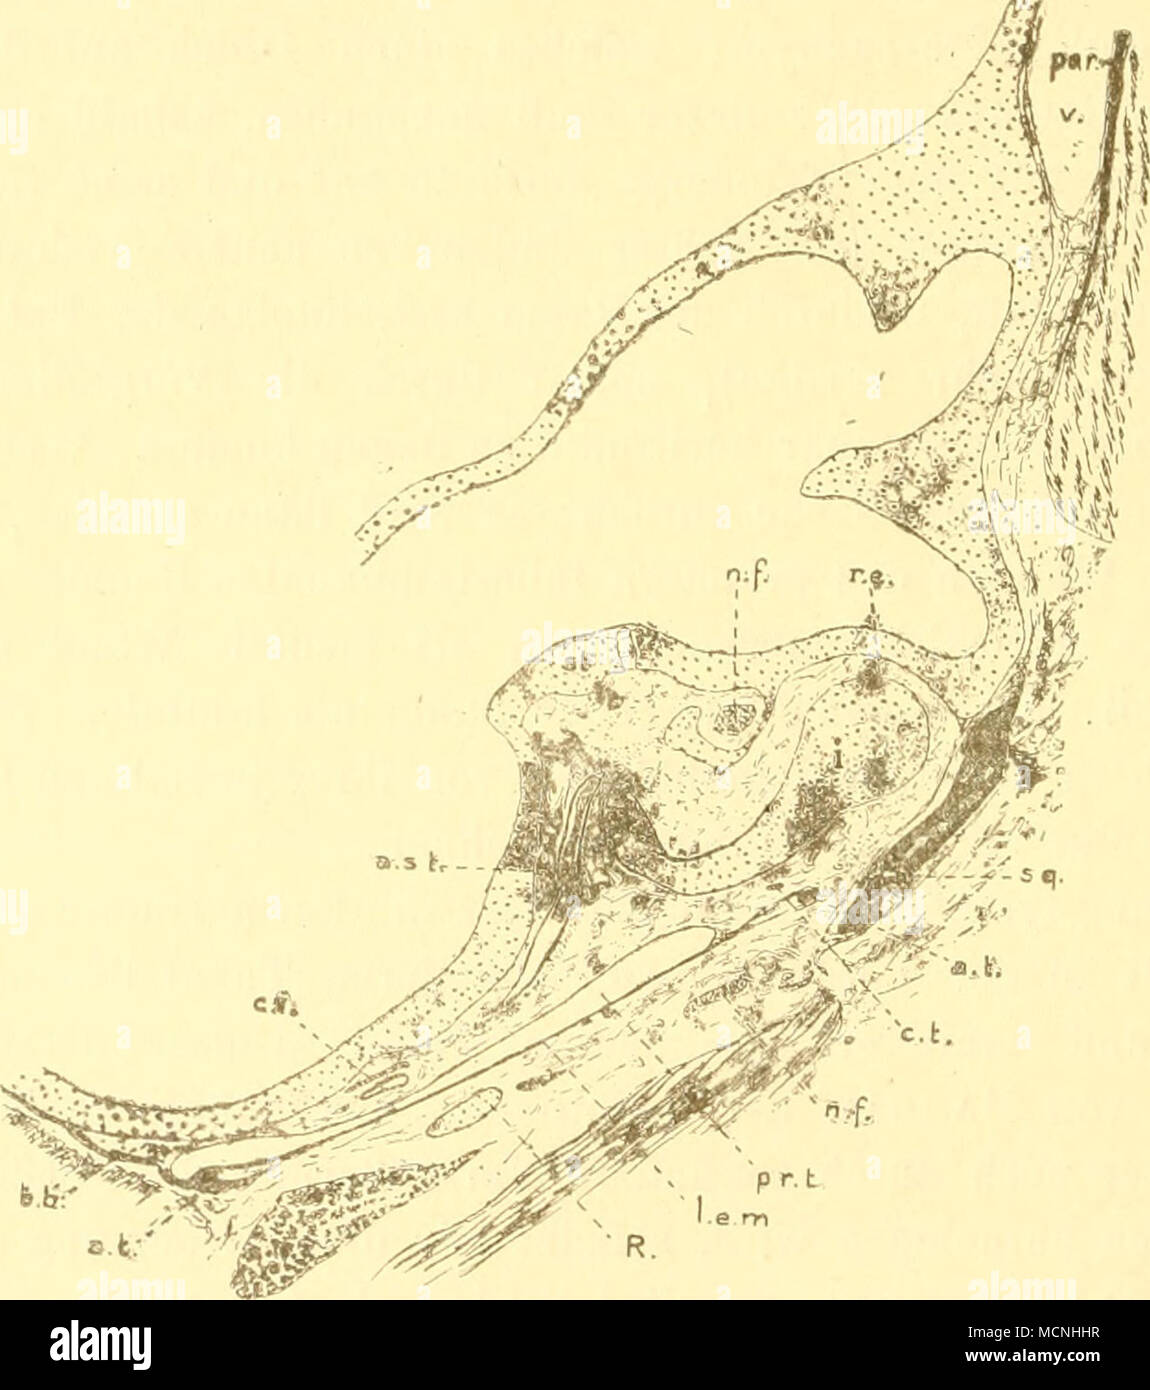 . Frontalschnitt durch Ohrltapsel und Paukenhöhle einer neugeborenen Tiipaja. a.si. Art. stapedia; a.t. Annulus tympanicns; 6.6. Bindegewehe in der ventralen Paukenhöhlenwand; c.i. Carotis interna; ct. Chorda tynipani; i. Incus; l.e.m. Lamina epithelialis meatus und Trommelfell; n.f. N. facialis; par. Parietale; pr.t. primäre Paukenhöhle; B. REicHERische Knorpel; r.e. Recessus epitympanicus, noch mit Schloimgewebe ausgefüllt; sg. Squamosum; v. Vene (im Meatus temporalis); st. Stapes. Malleus (mit Ausnahme des Manubrium) ein. Weil man dieses Schleimgewebe anfänglich als freien Schleim betrachte Stock Photo